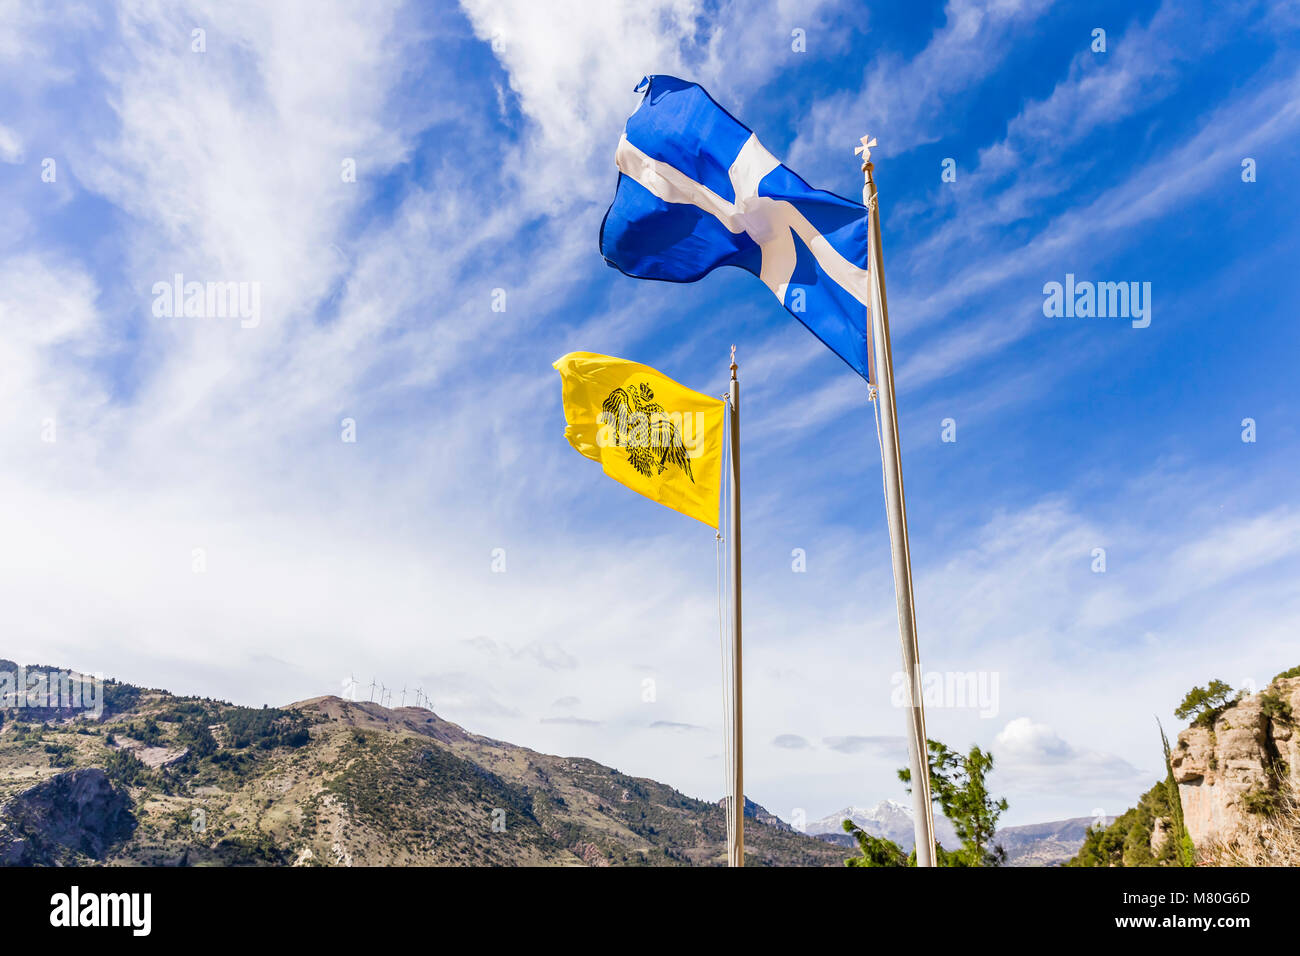 Greche e bizantine bandiere sventolano in aria contro il cielo nuvoloso Foto Stock